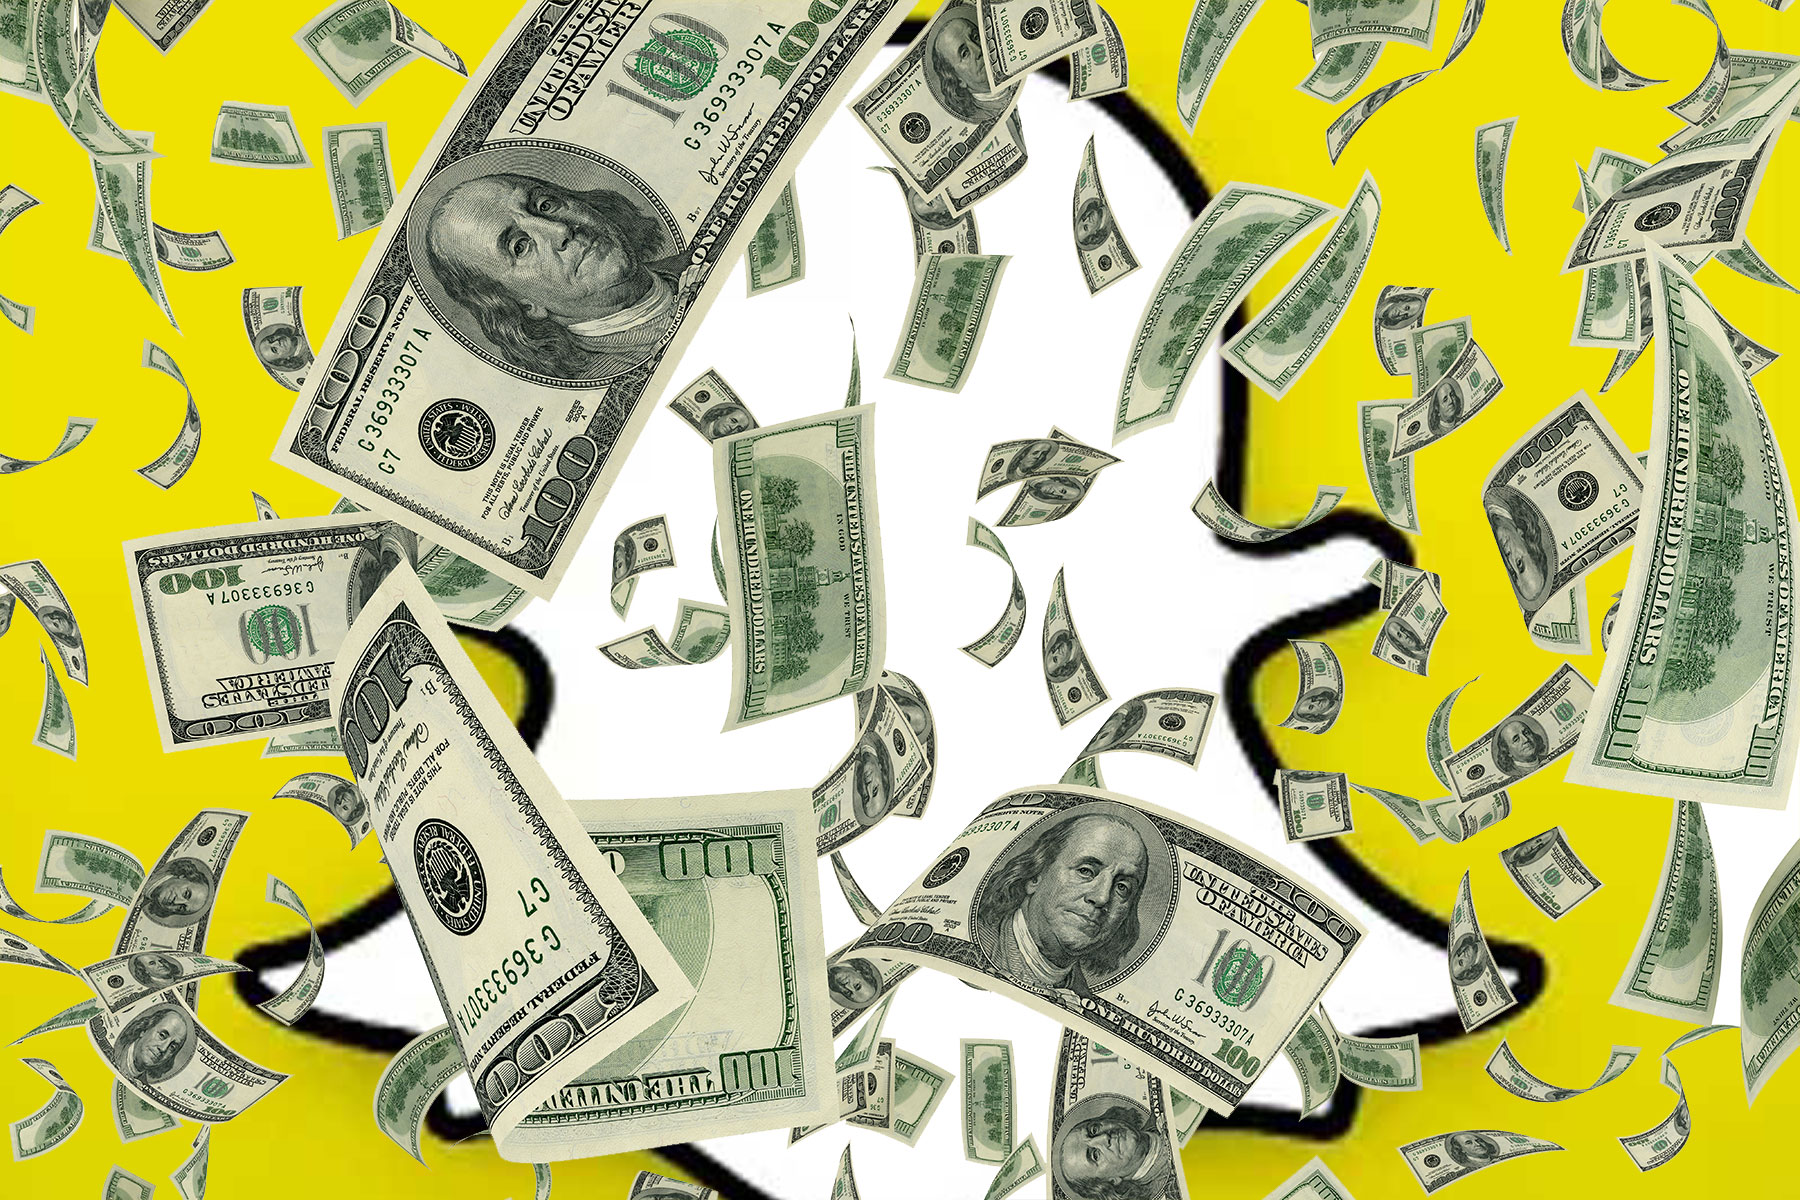 Günlük 110 milyon kullanıcıyı geçen Snapchat'e 1.8 milyar dolar yatırım!